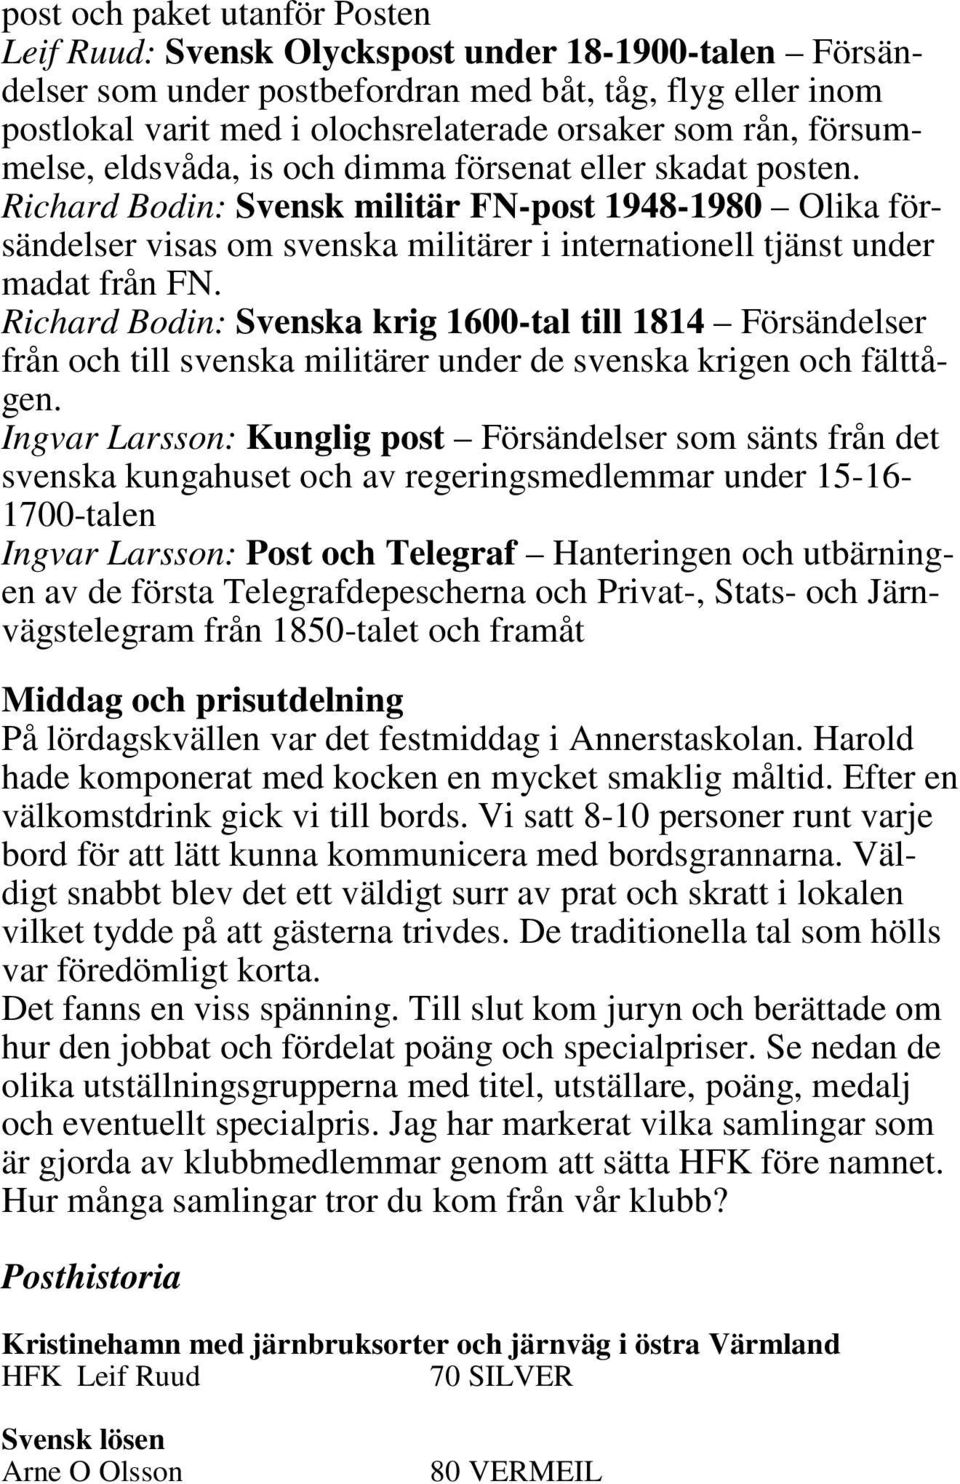 Richard Bodin: Svensk militär FN-post 1948-1980 Olika försändelser visas om svenska militärer i internationell tjänst under madat från FN.